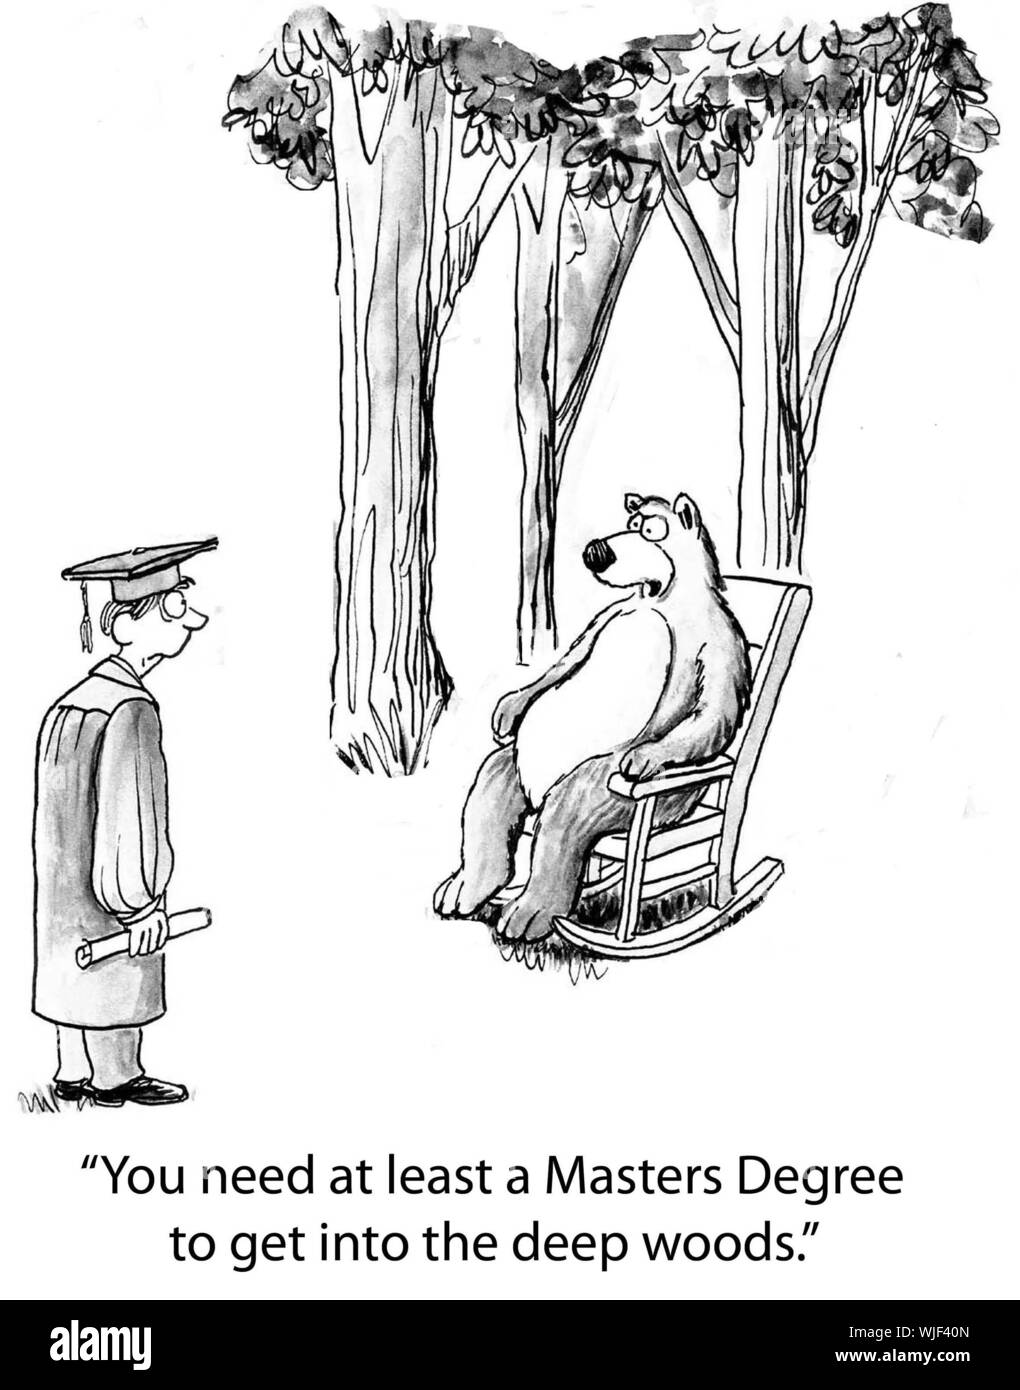 "Sie müssen mindestens einen Masterabschluss in den tiefen Wäldern zu erhalten. Stockfoto